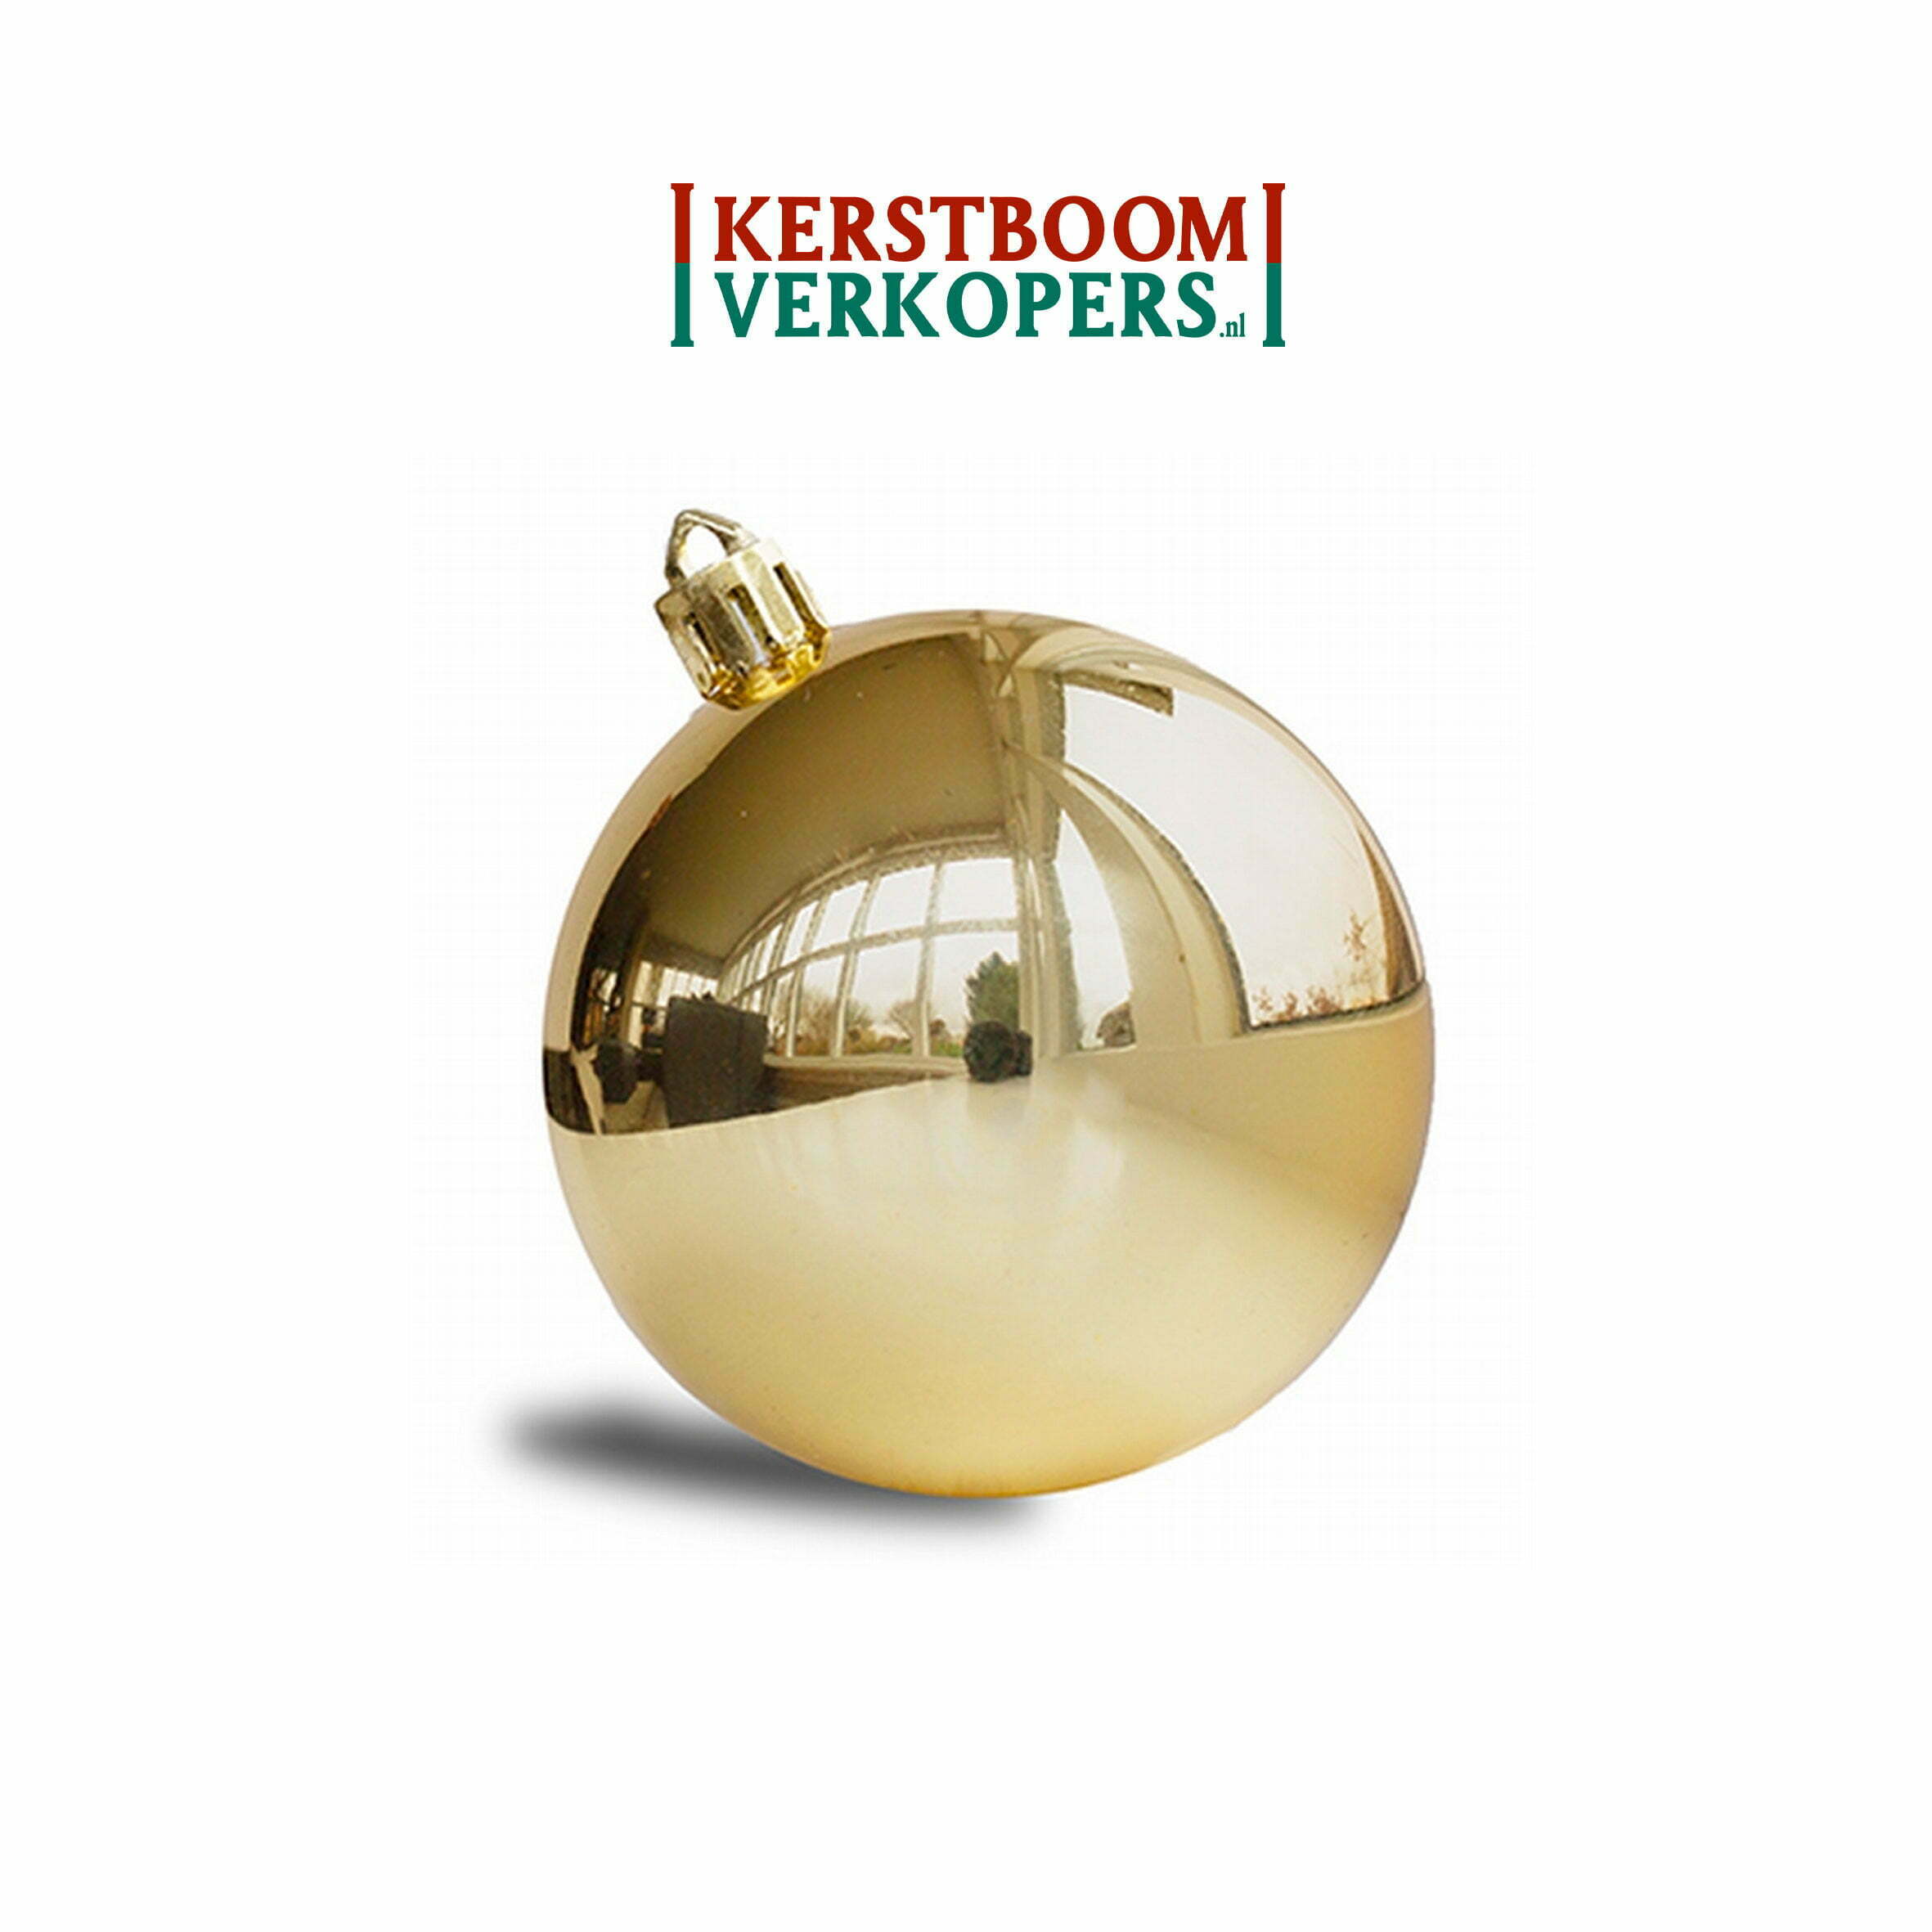 Kerstballen goud (glans) - - €99,- per st. - Kerstboomverkopers.nl